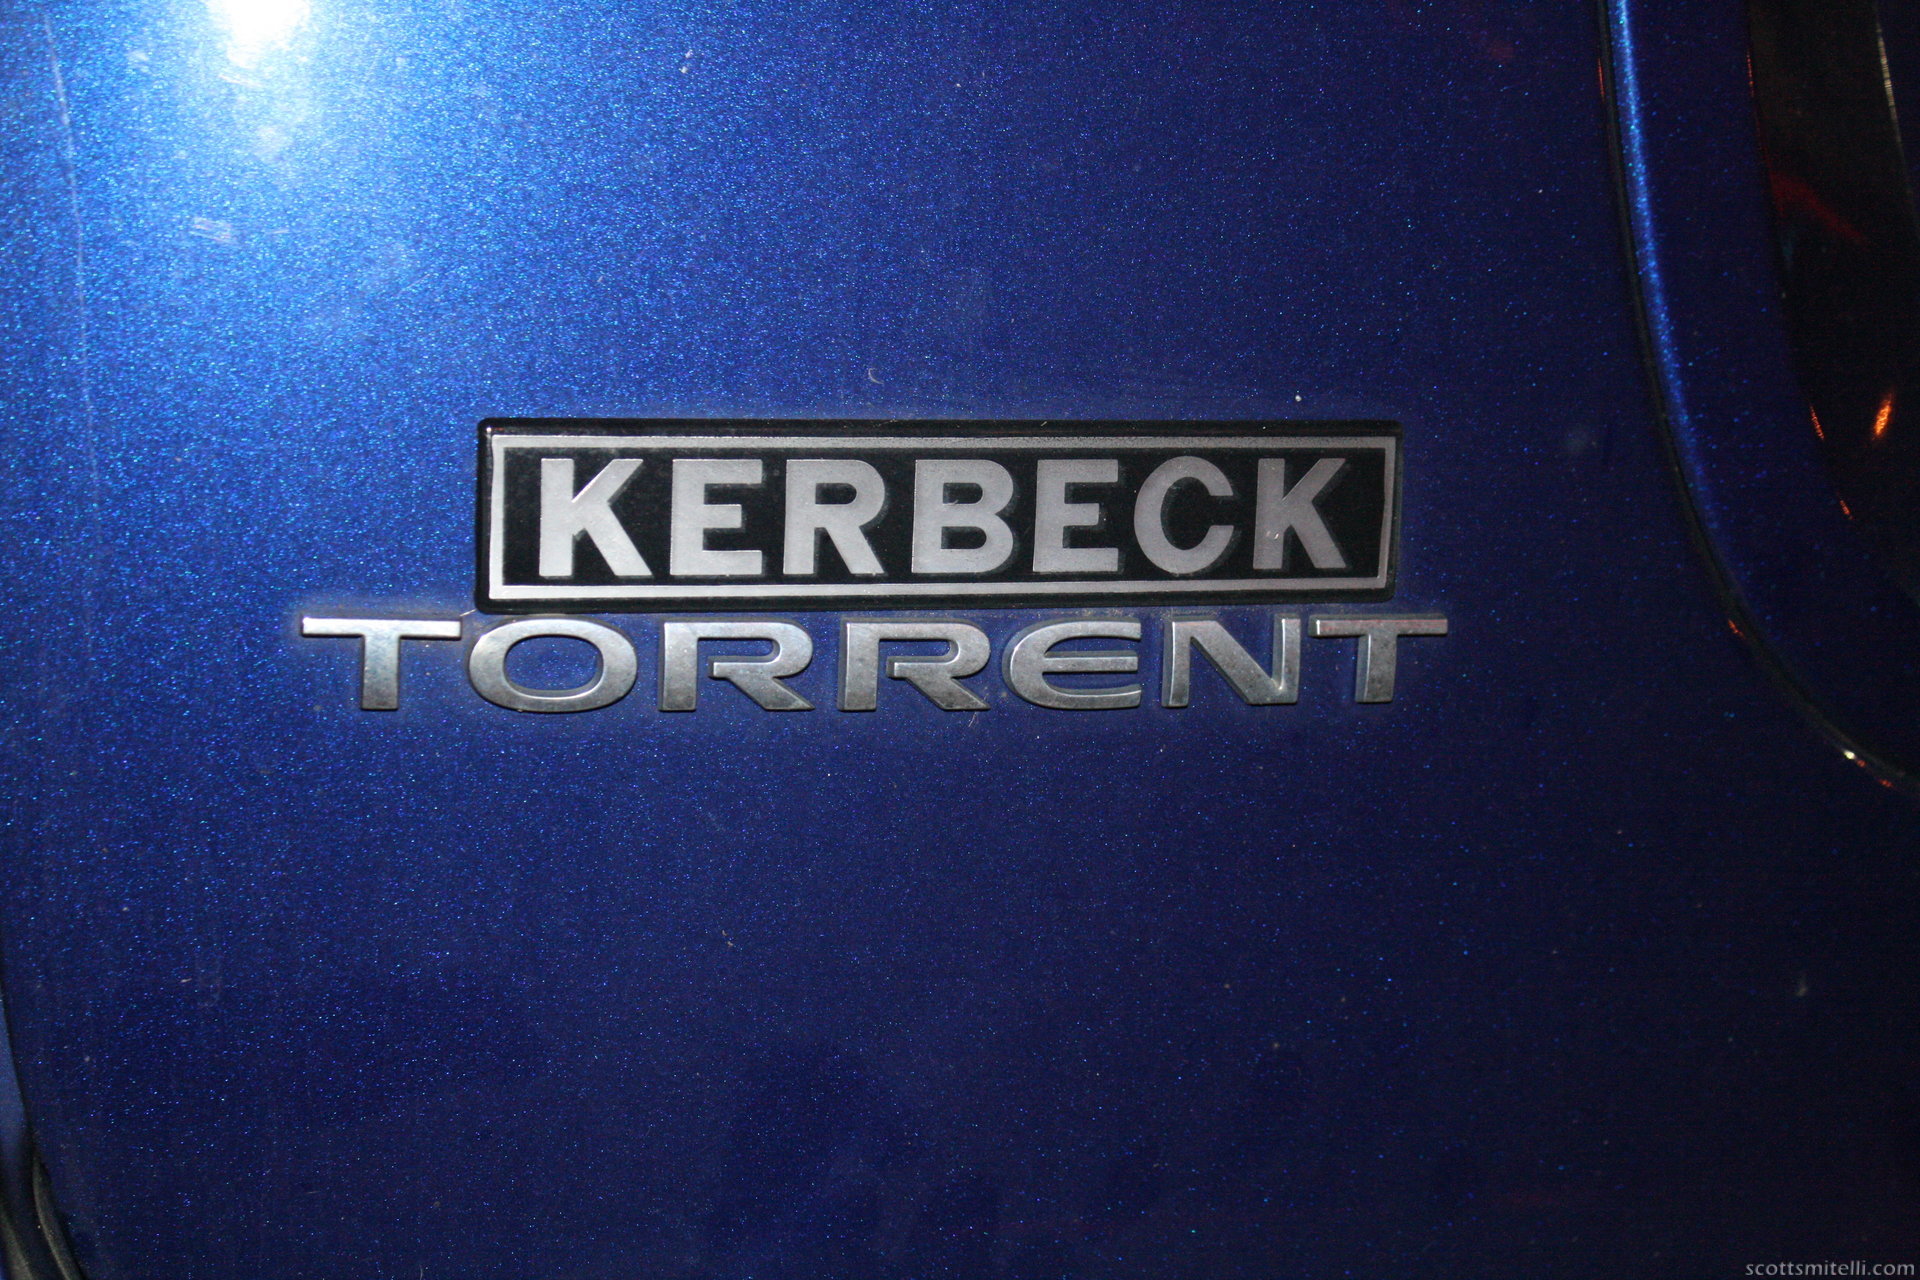 Kerbeck Torrent